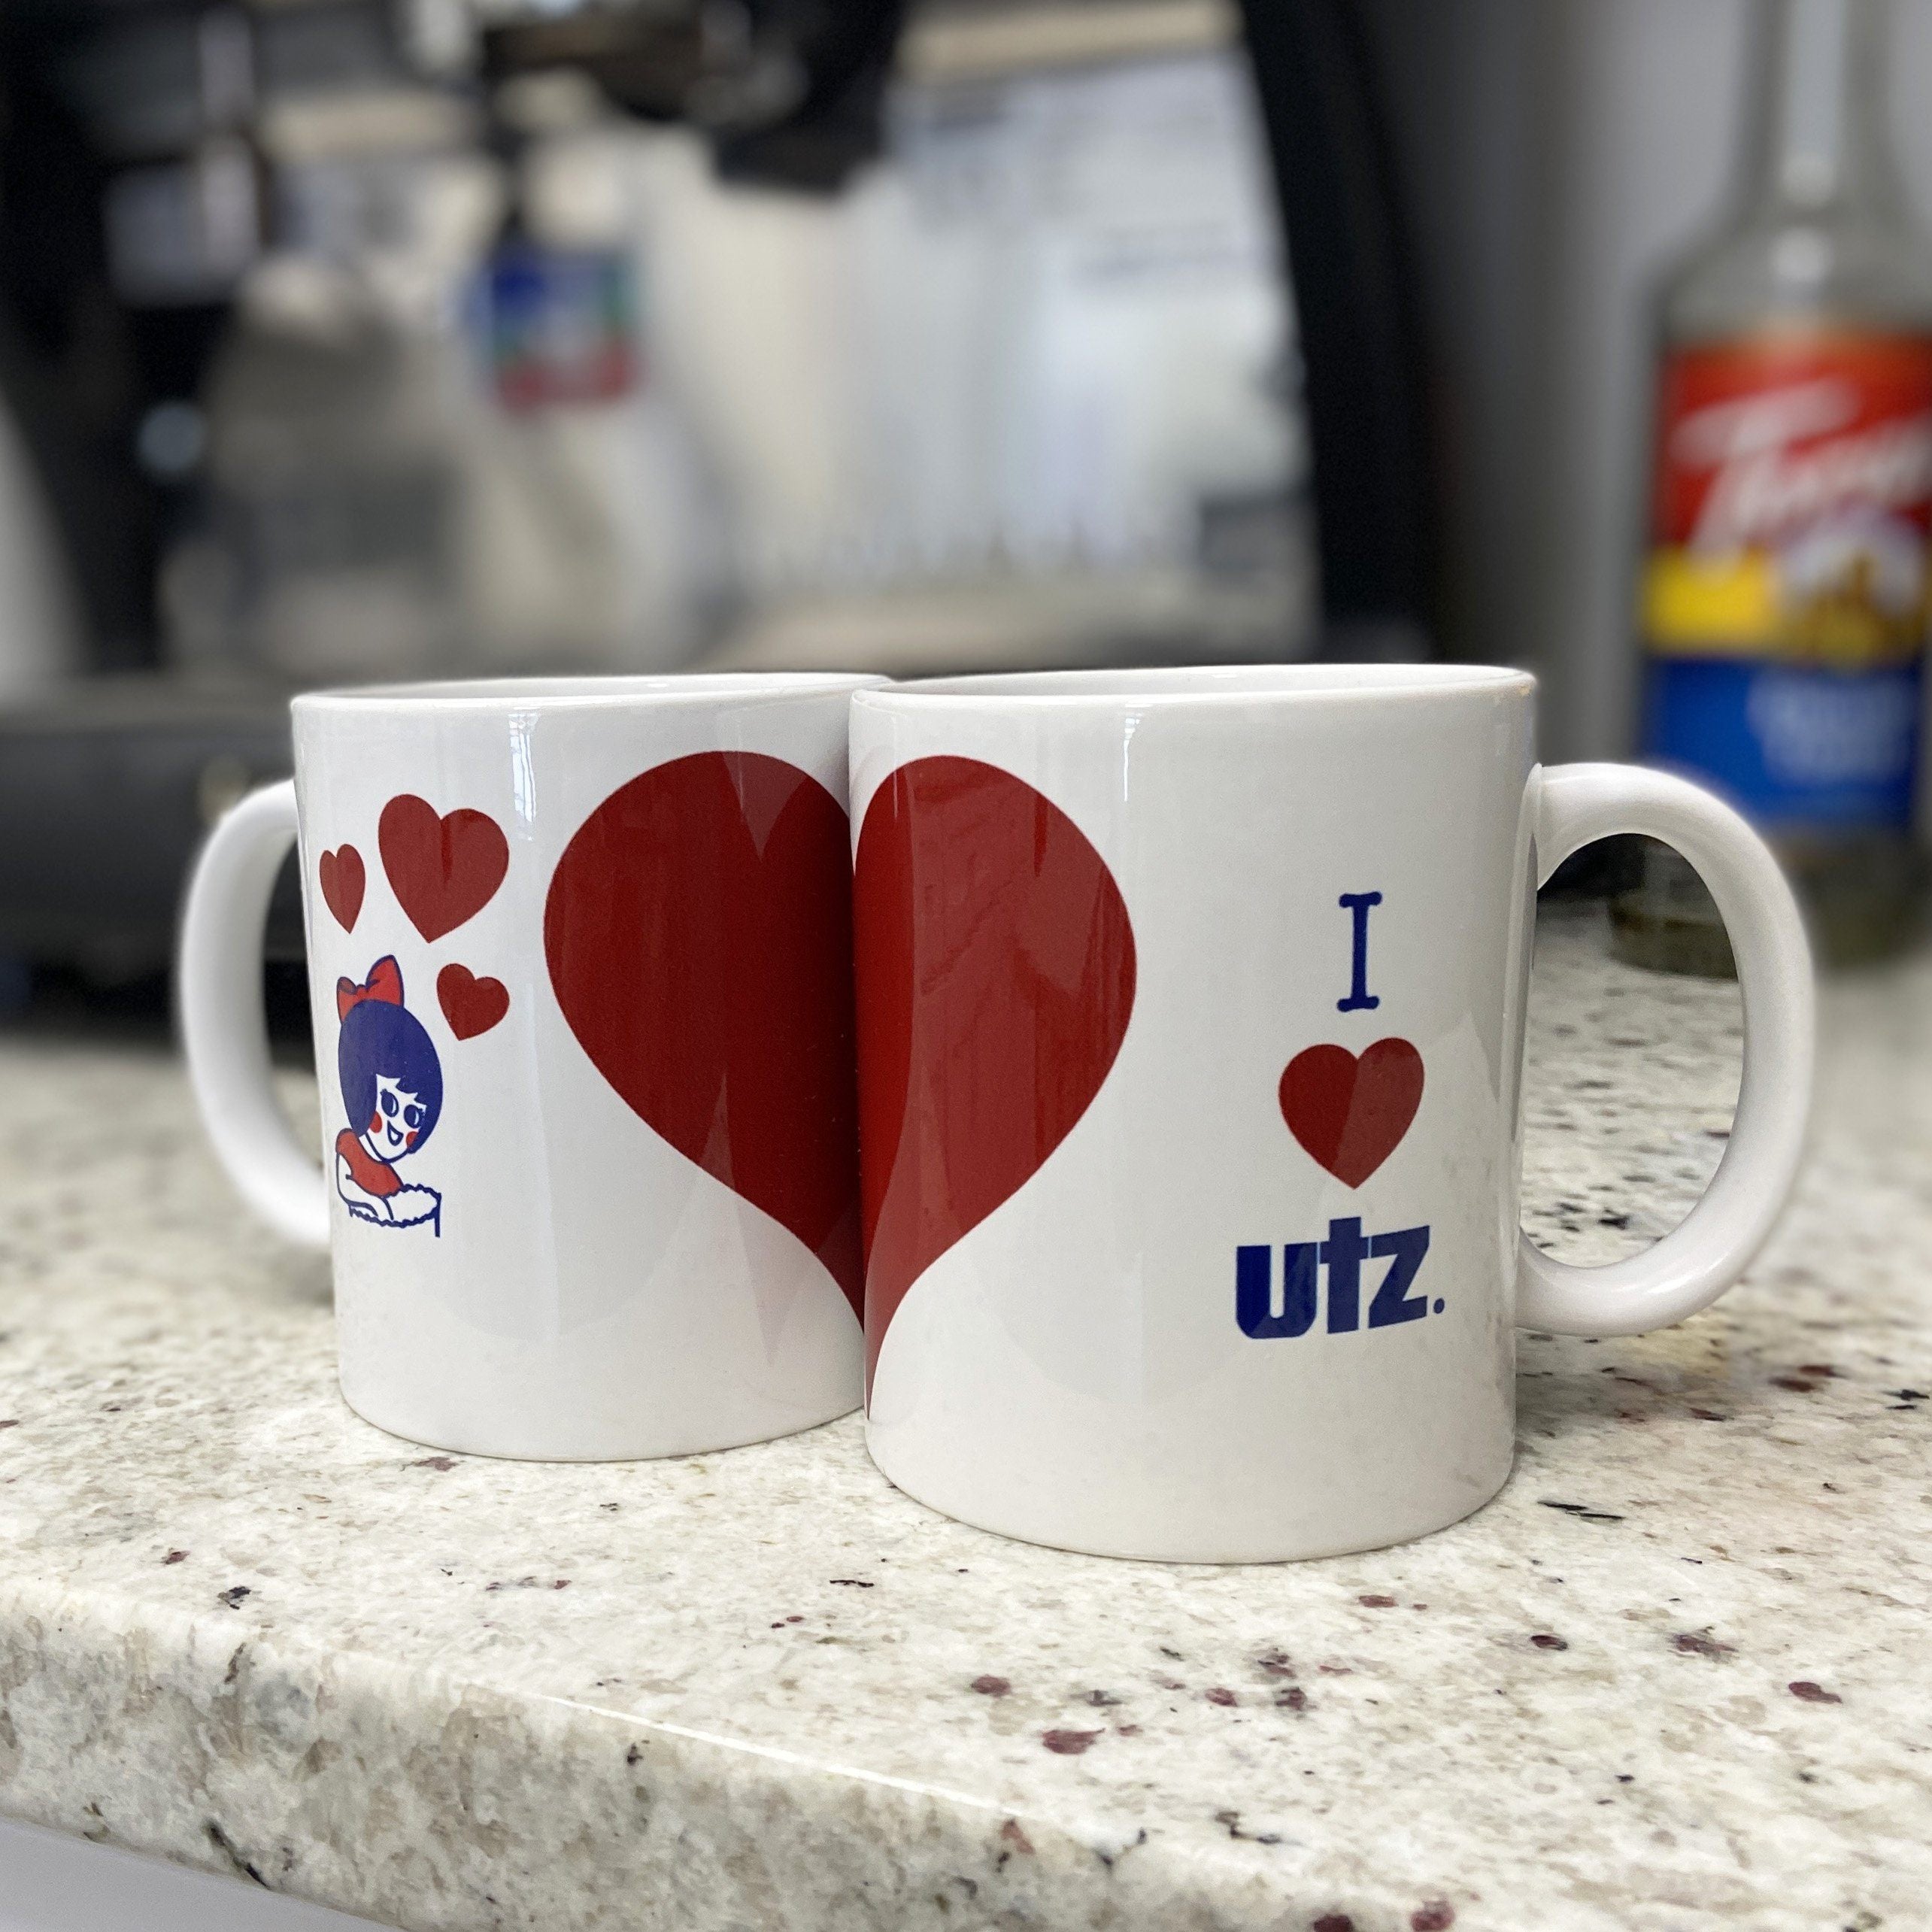 Utz Original Chips / Mug